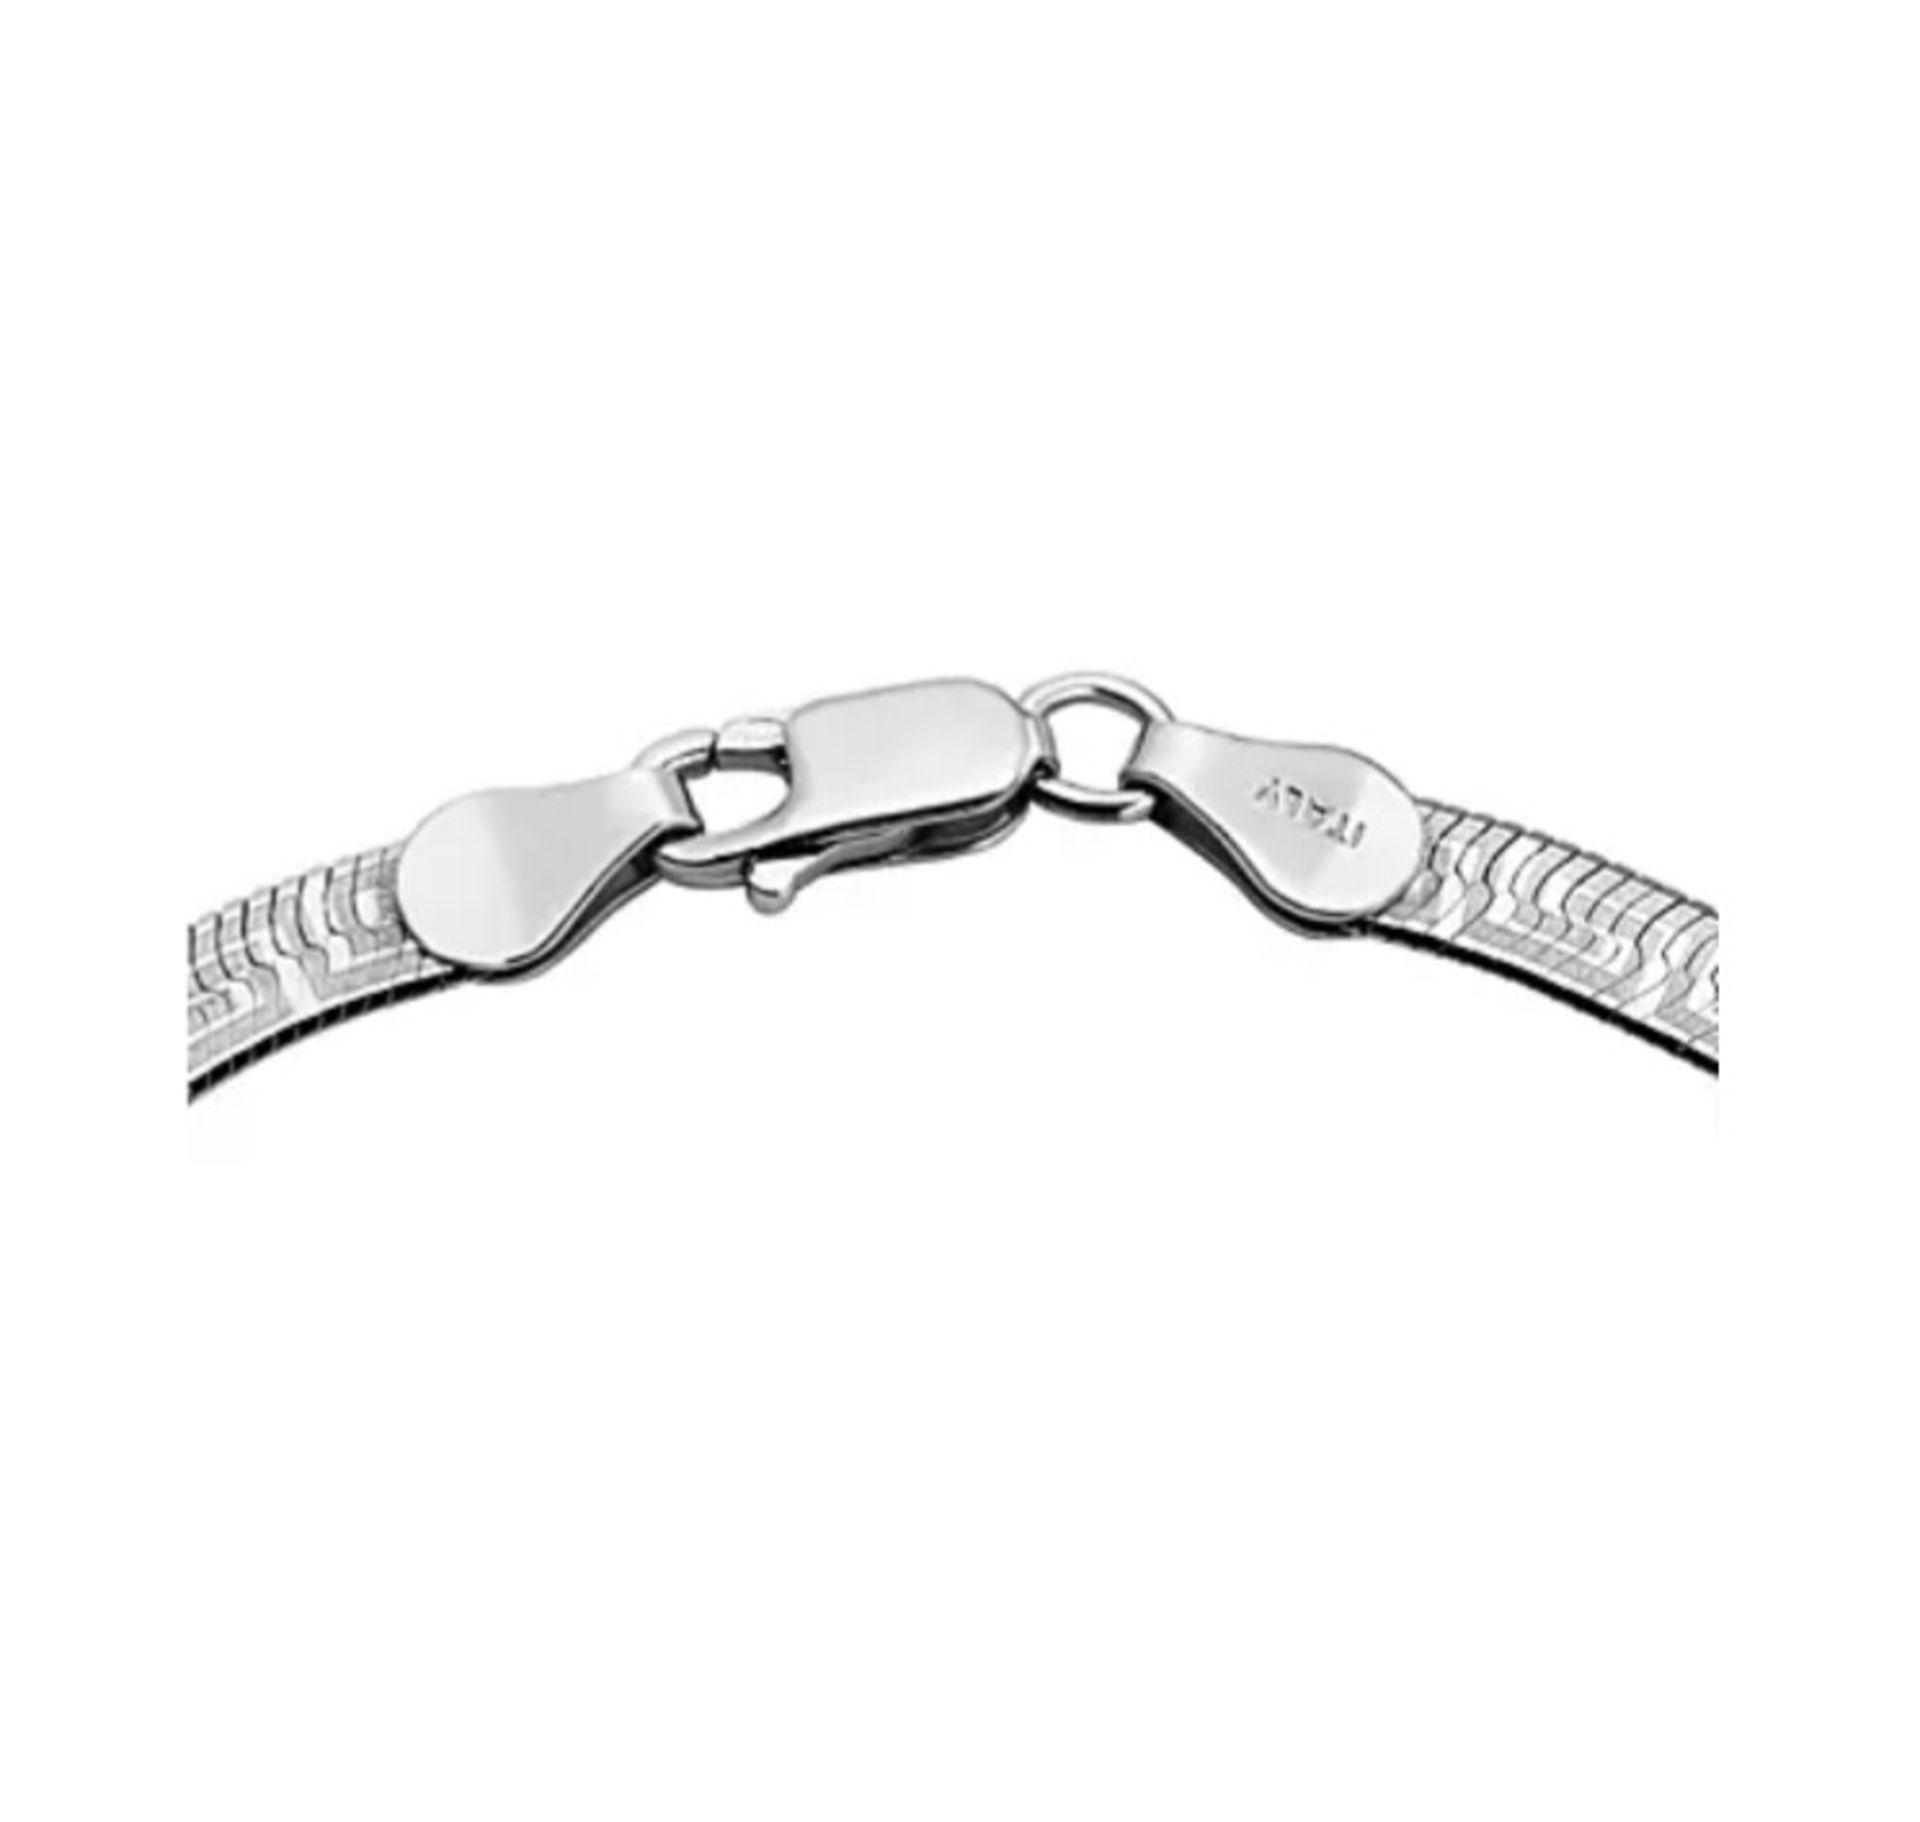 New! Italian Greek Key Style Sterling Silver Bracelet - Image 3 of 3